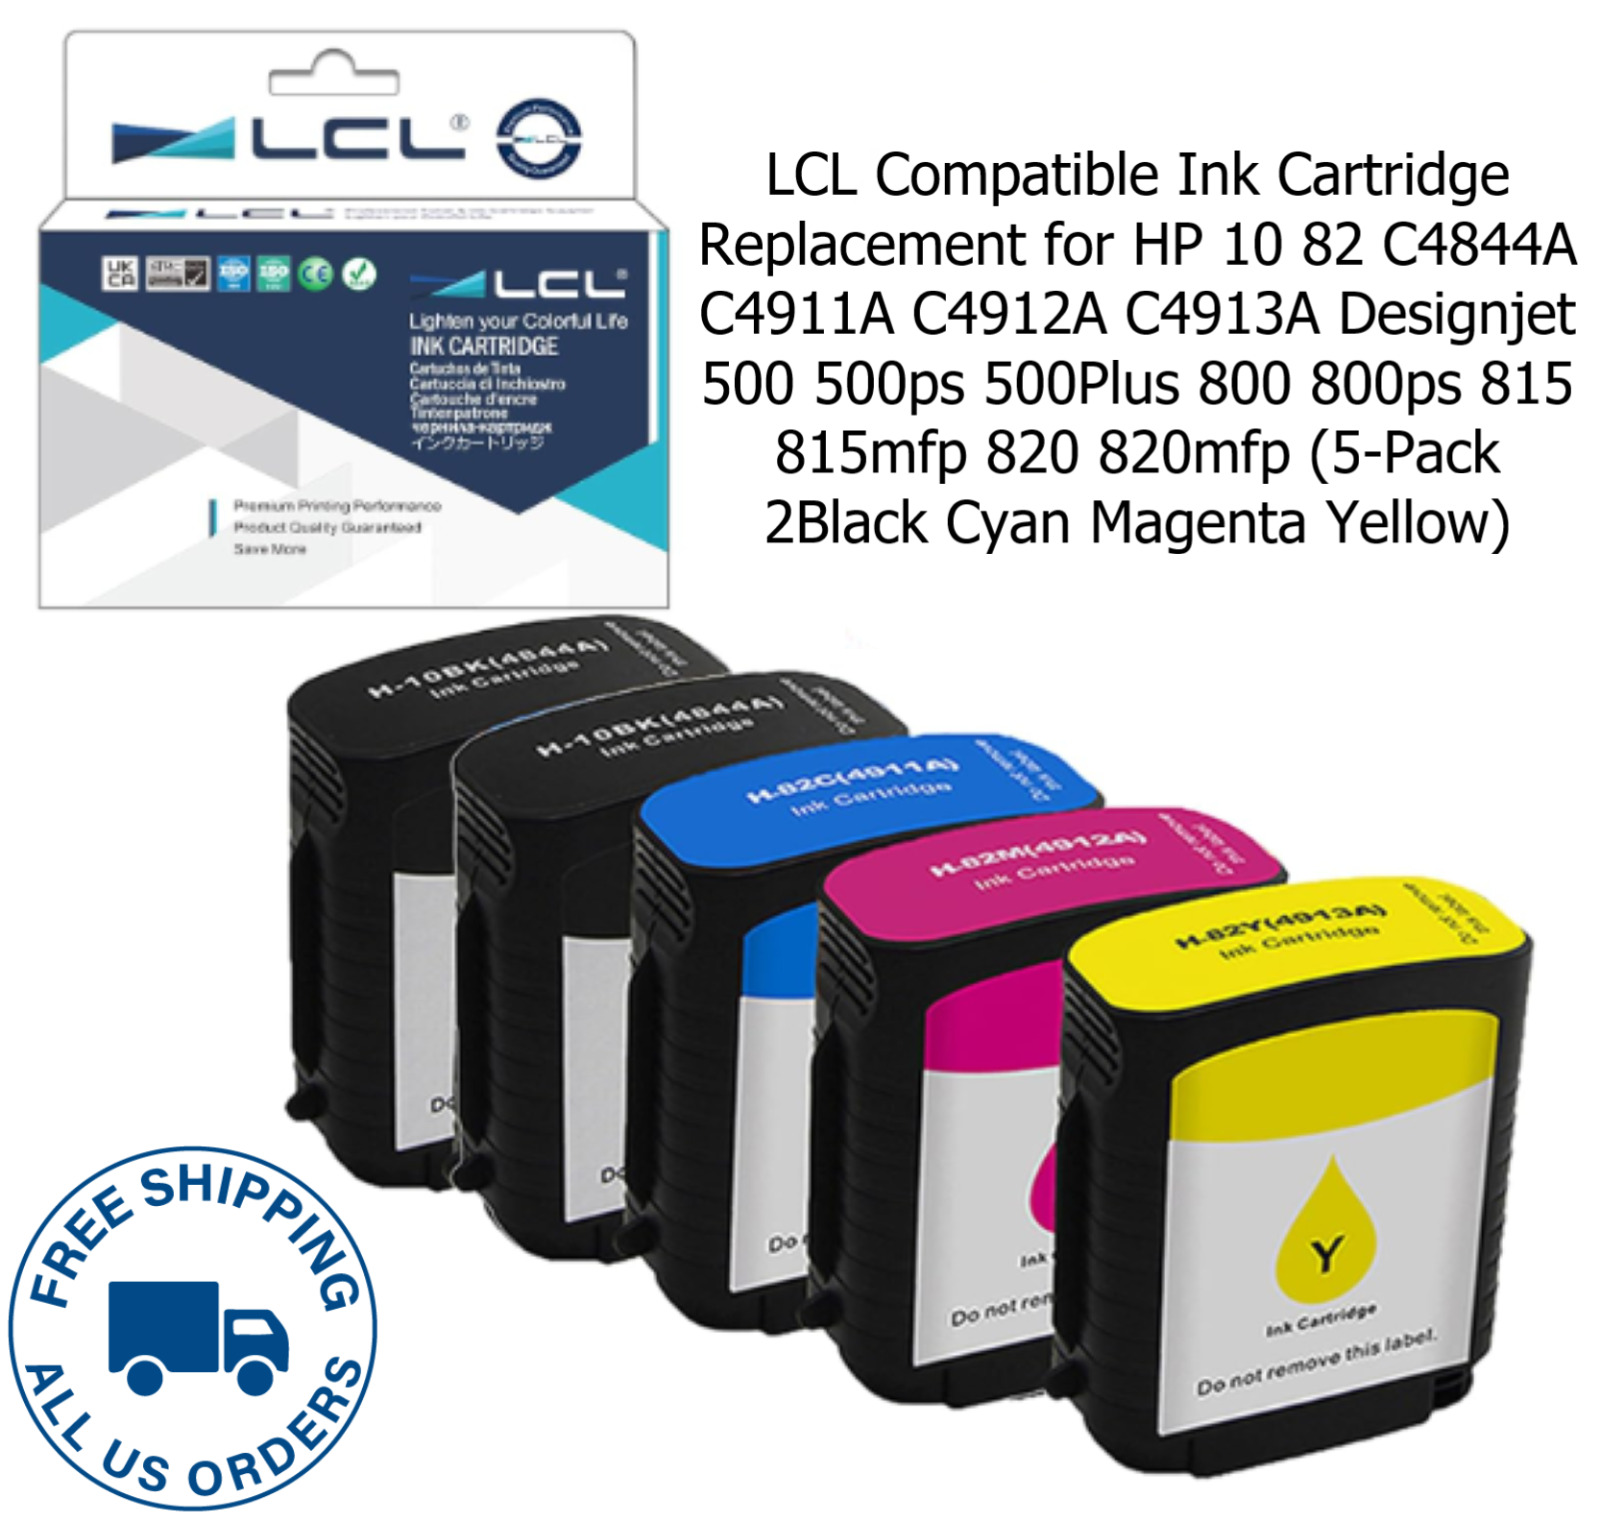 LCL Ink Cartridge for HP 10 82 C4844A C4911A C4912A C4913A Designjet 500 500ps